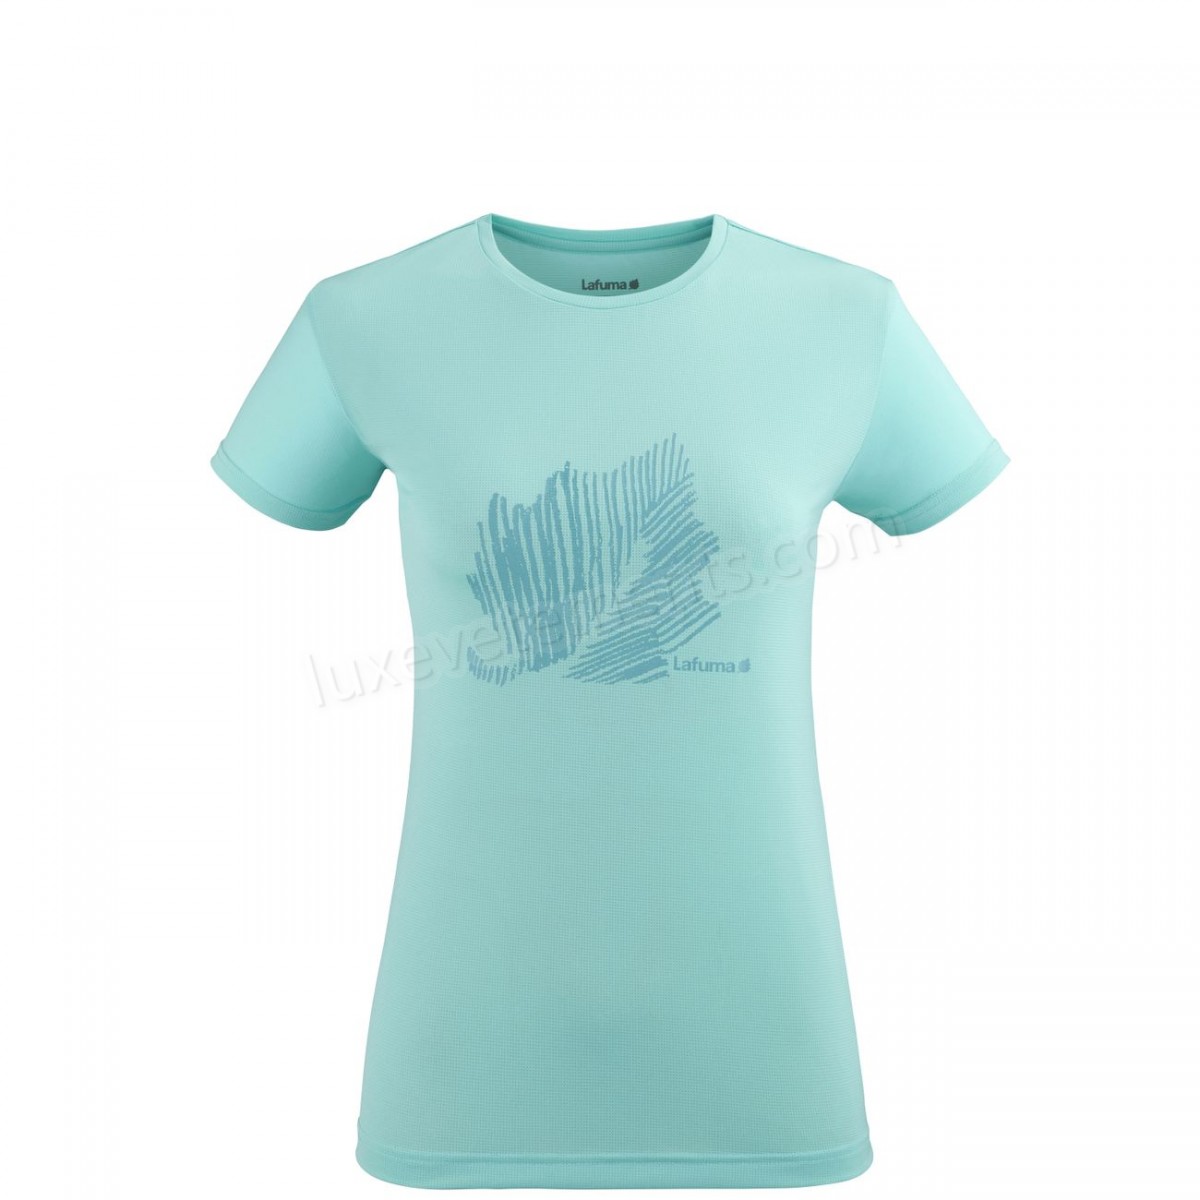 Lafuma-Randonnée pédestre femme LAFUMA Tee-shirt Manches Courtes Femme - Corporate Tee W Bleu Vente en ligne - -0